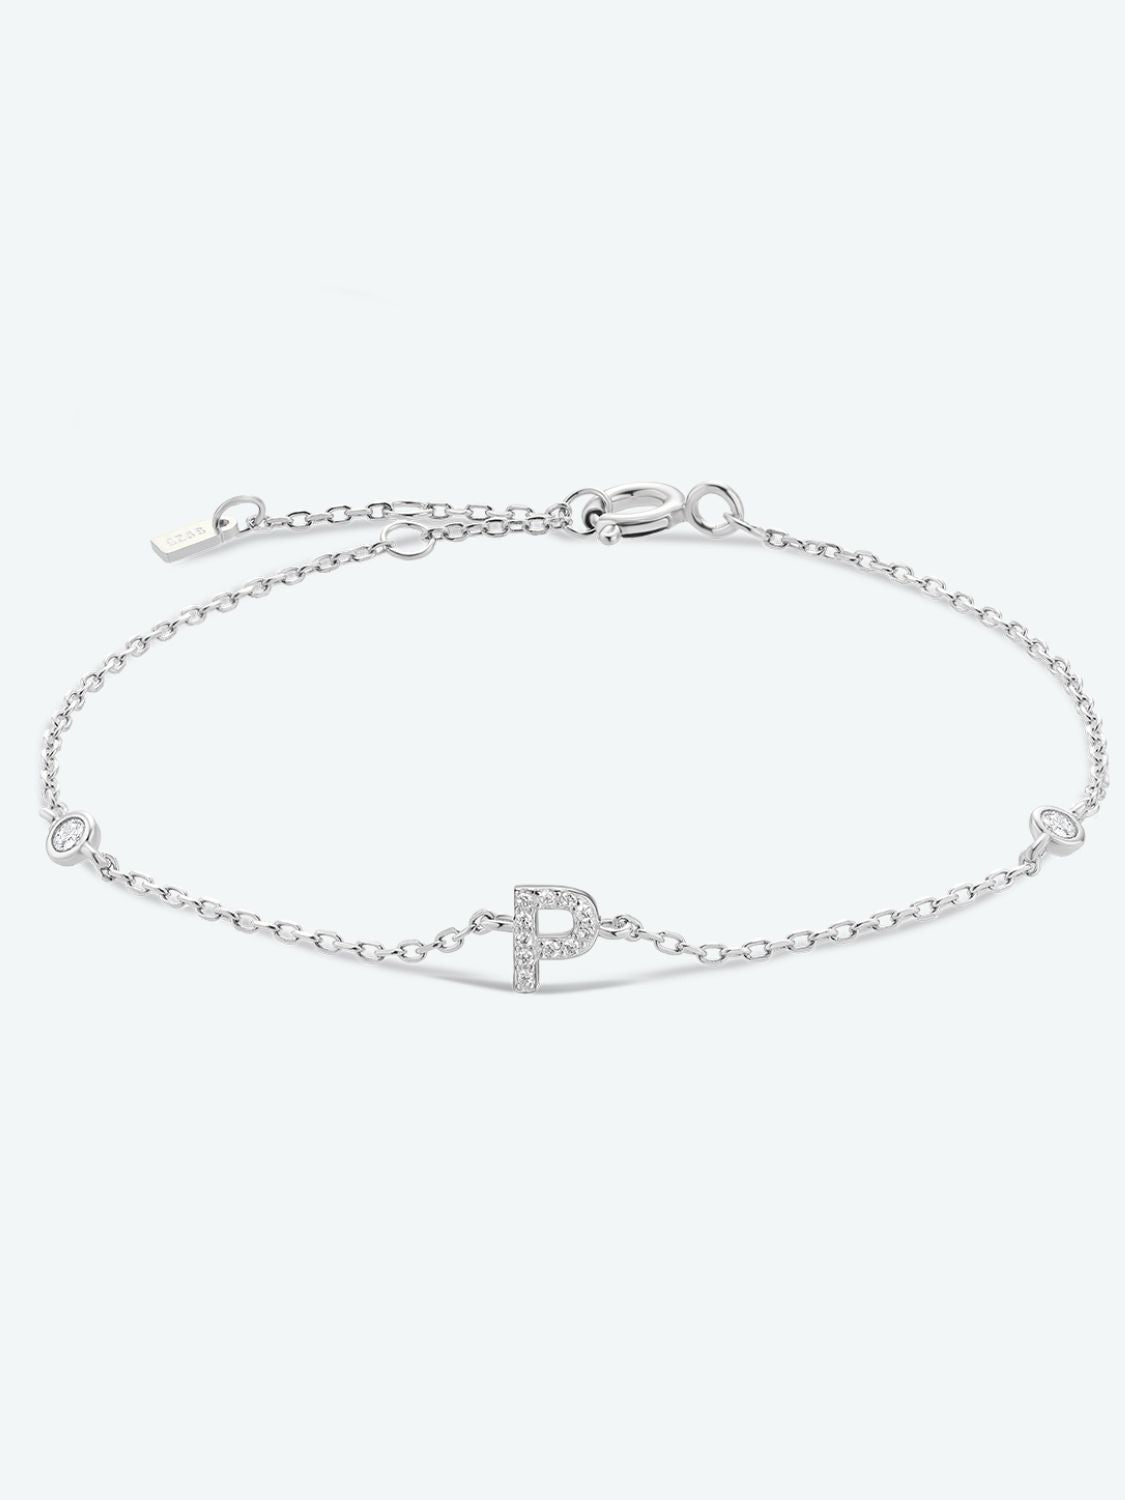 L To P Zircon 925 Sterling Silver Bracelet - P-Silver / One Size - Women’s Jewelry - Bracelets - 28 - 2024